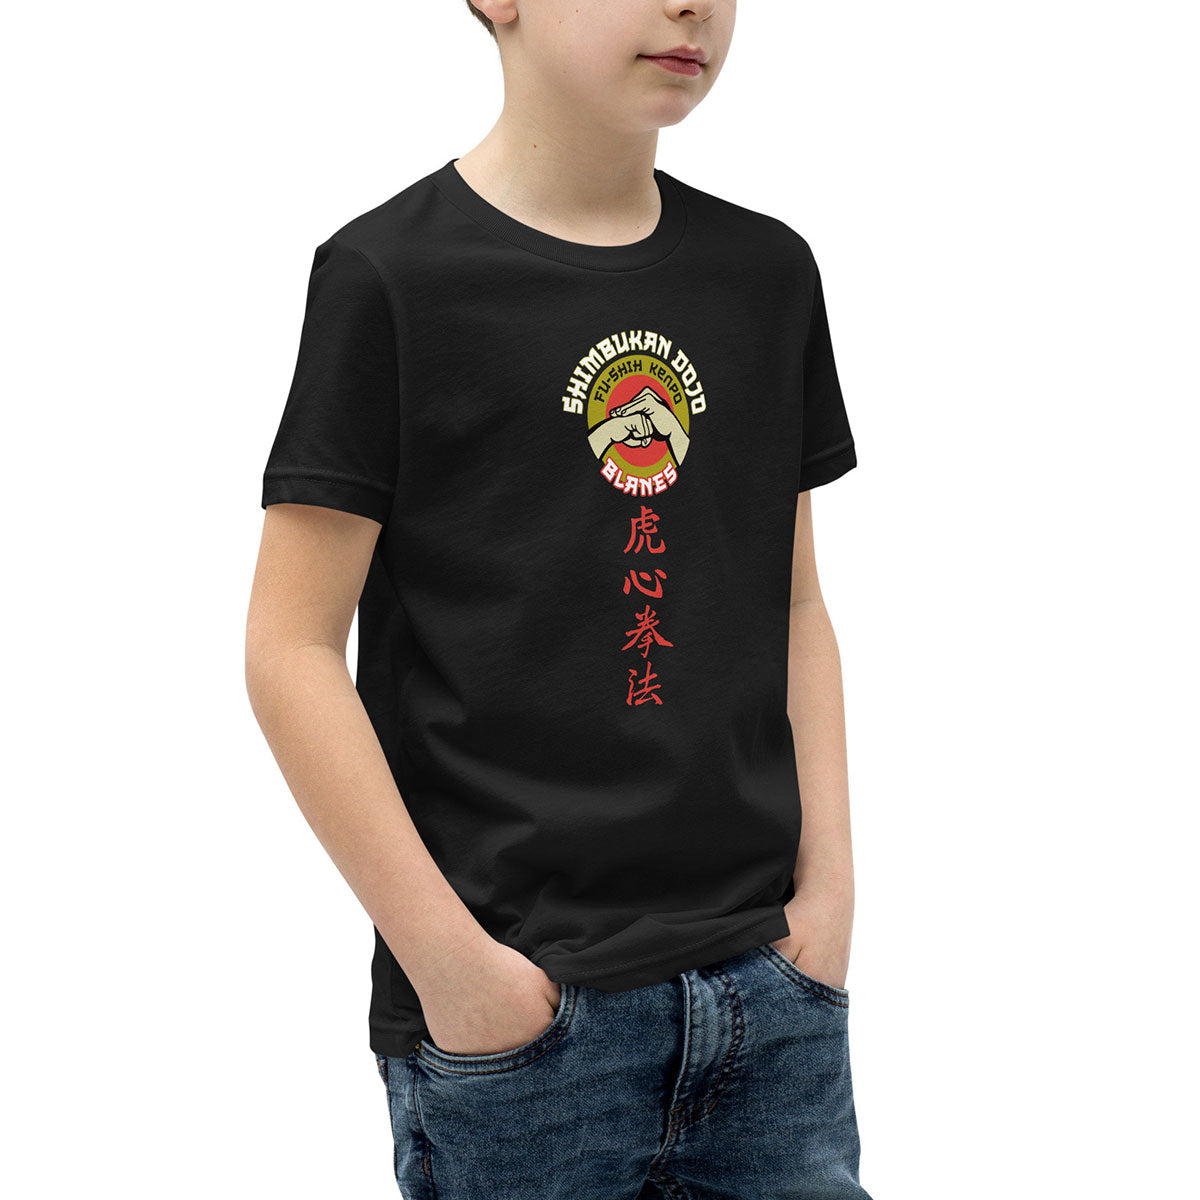 SHIMBUKAN DOJO · Camiseta m/corta·Adolescente · Medium·Black-292c3f